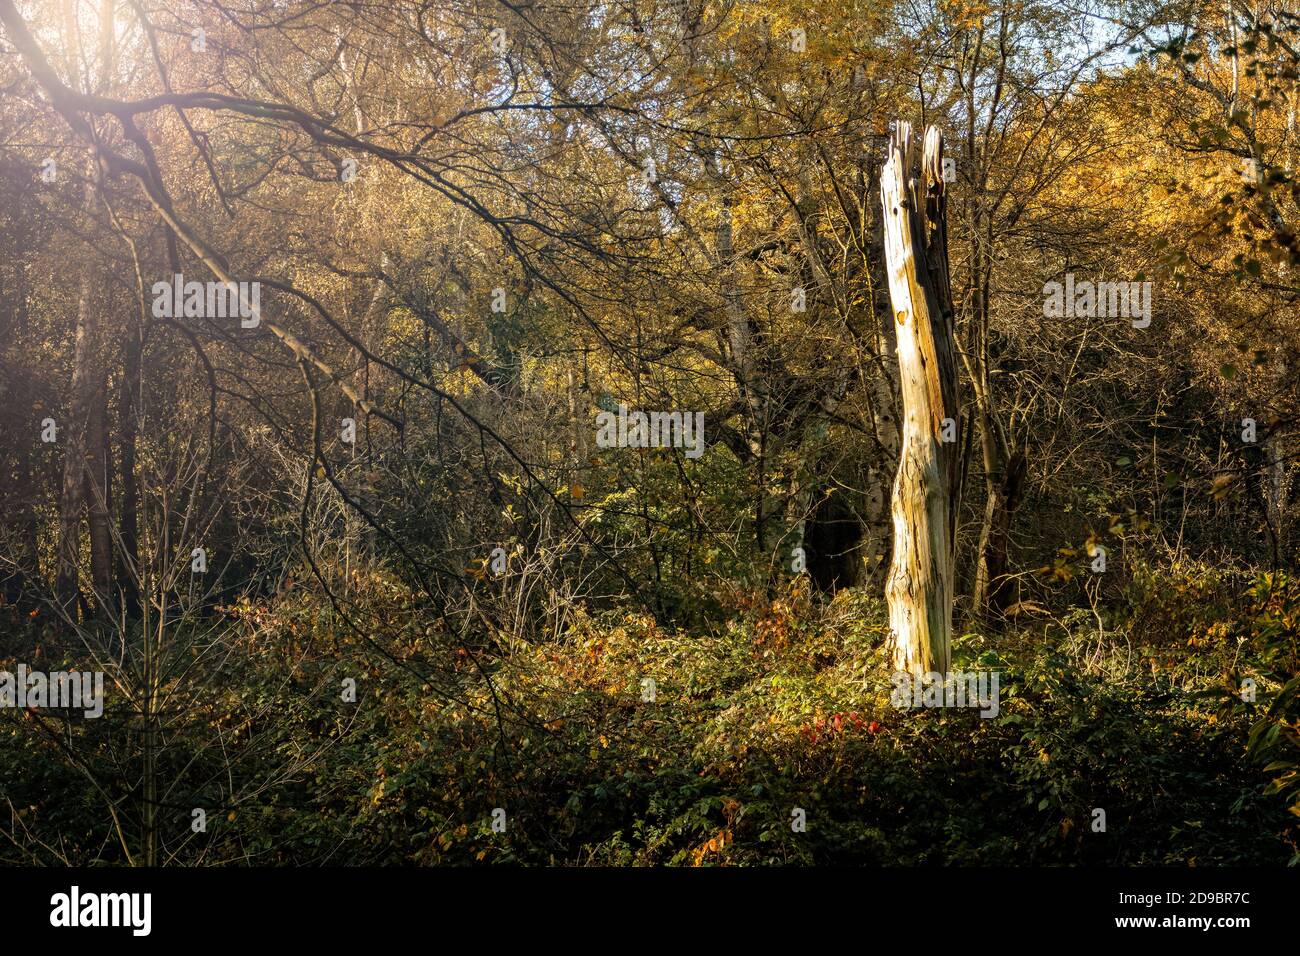 Hampstead Heath in Autumn Stock Photo